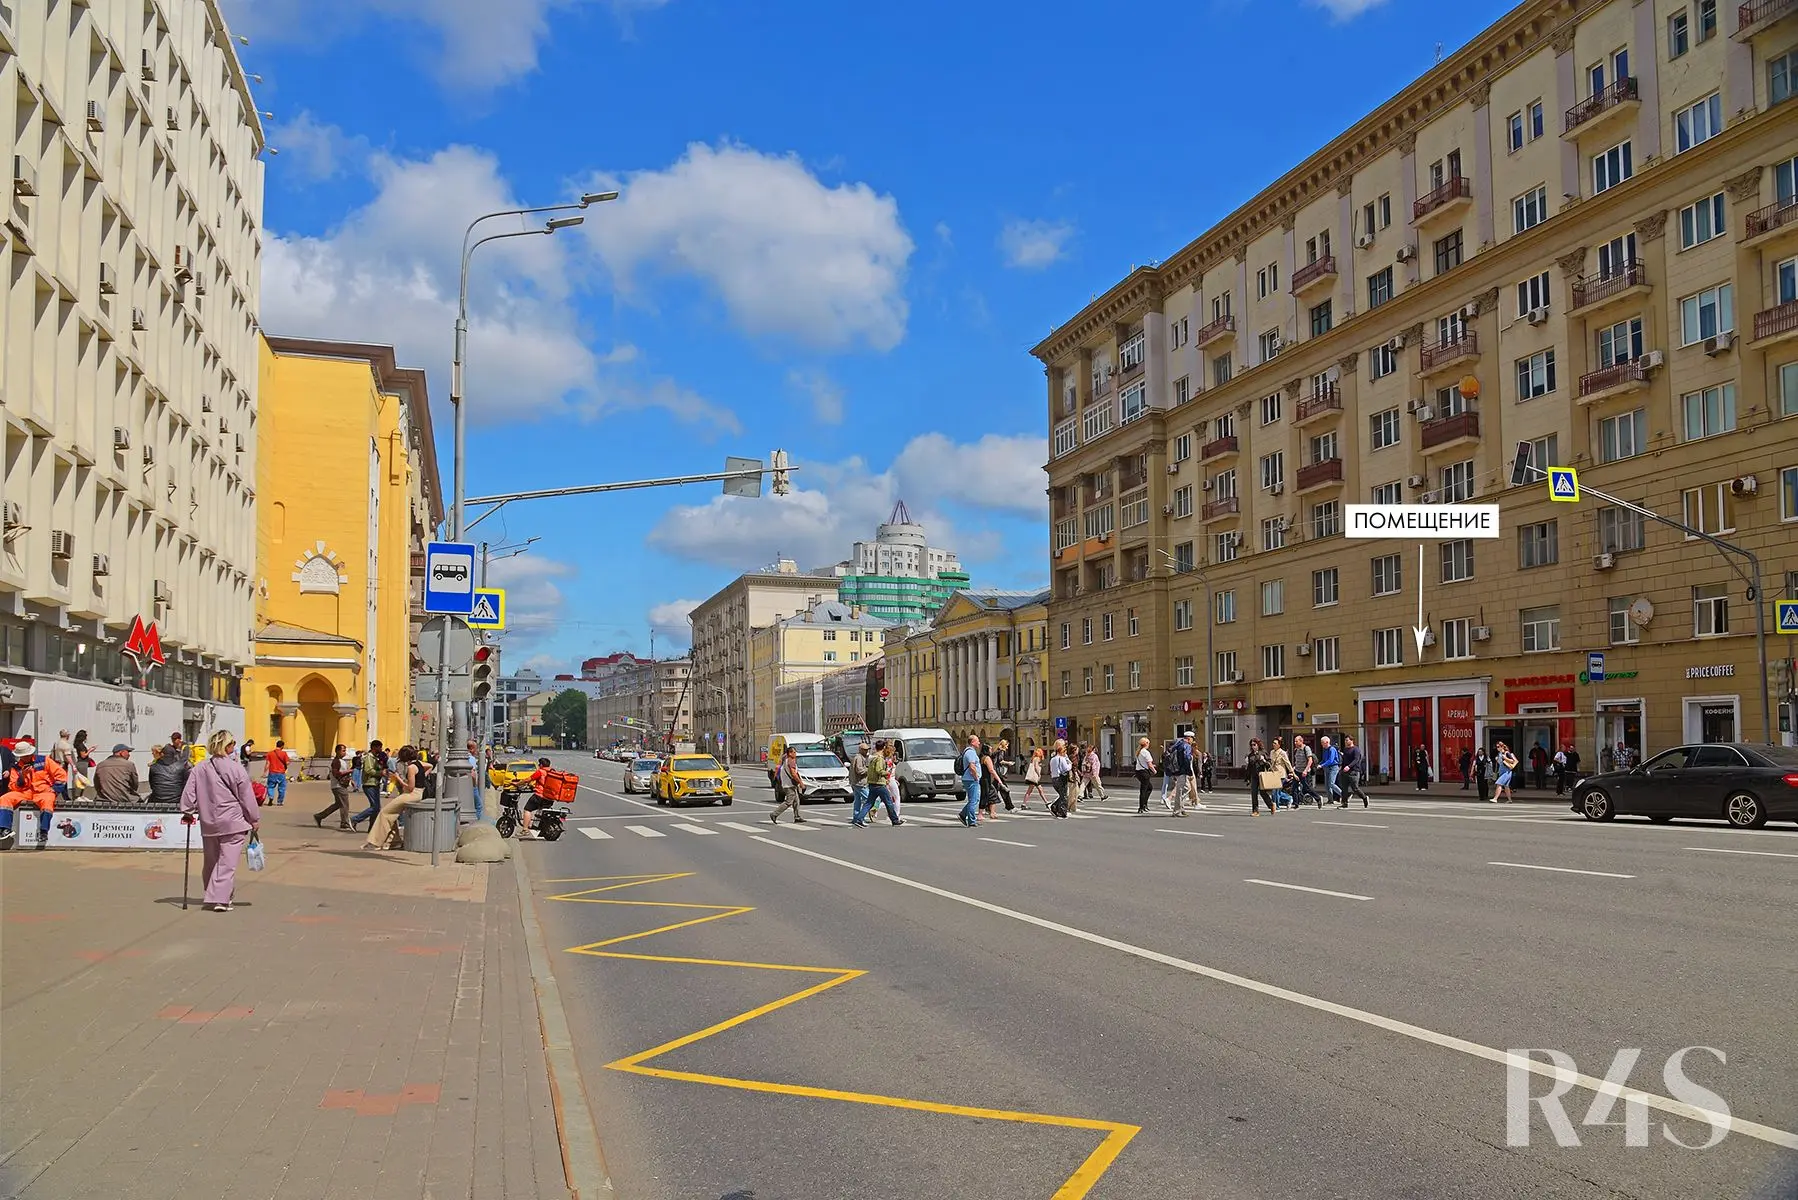 Продажа торговых помещений площадью 74 - 79.8 м2 в Москве:  проспект Мира, 48 R4S | Realty4Sale